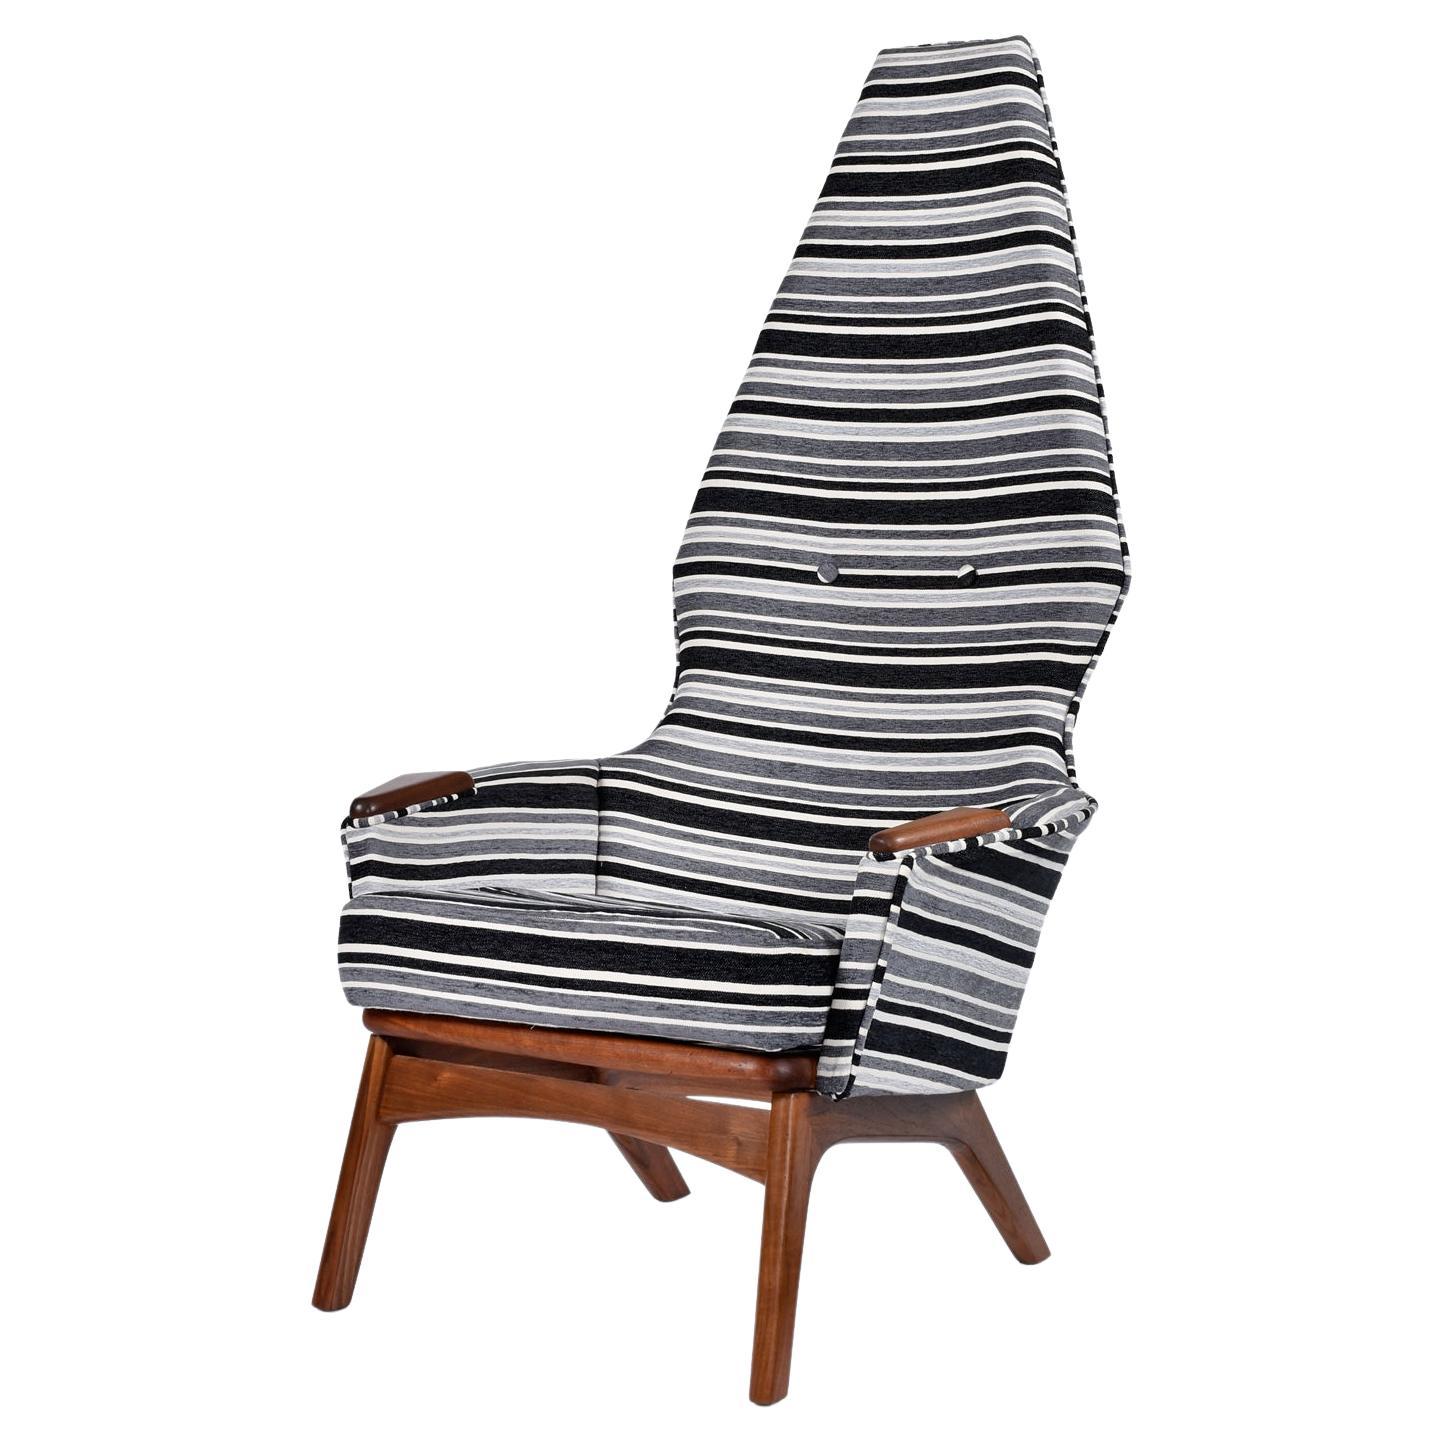 La chaise longue 2056-C d'Adrian Pearsall for Craft Associates, de style moderne du milieu du siècle, a une allure sinistre indéniable.  Le profil touffeté et effilé du haut dossier évoque une sophistication royale qui impose le respect.  Le